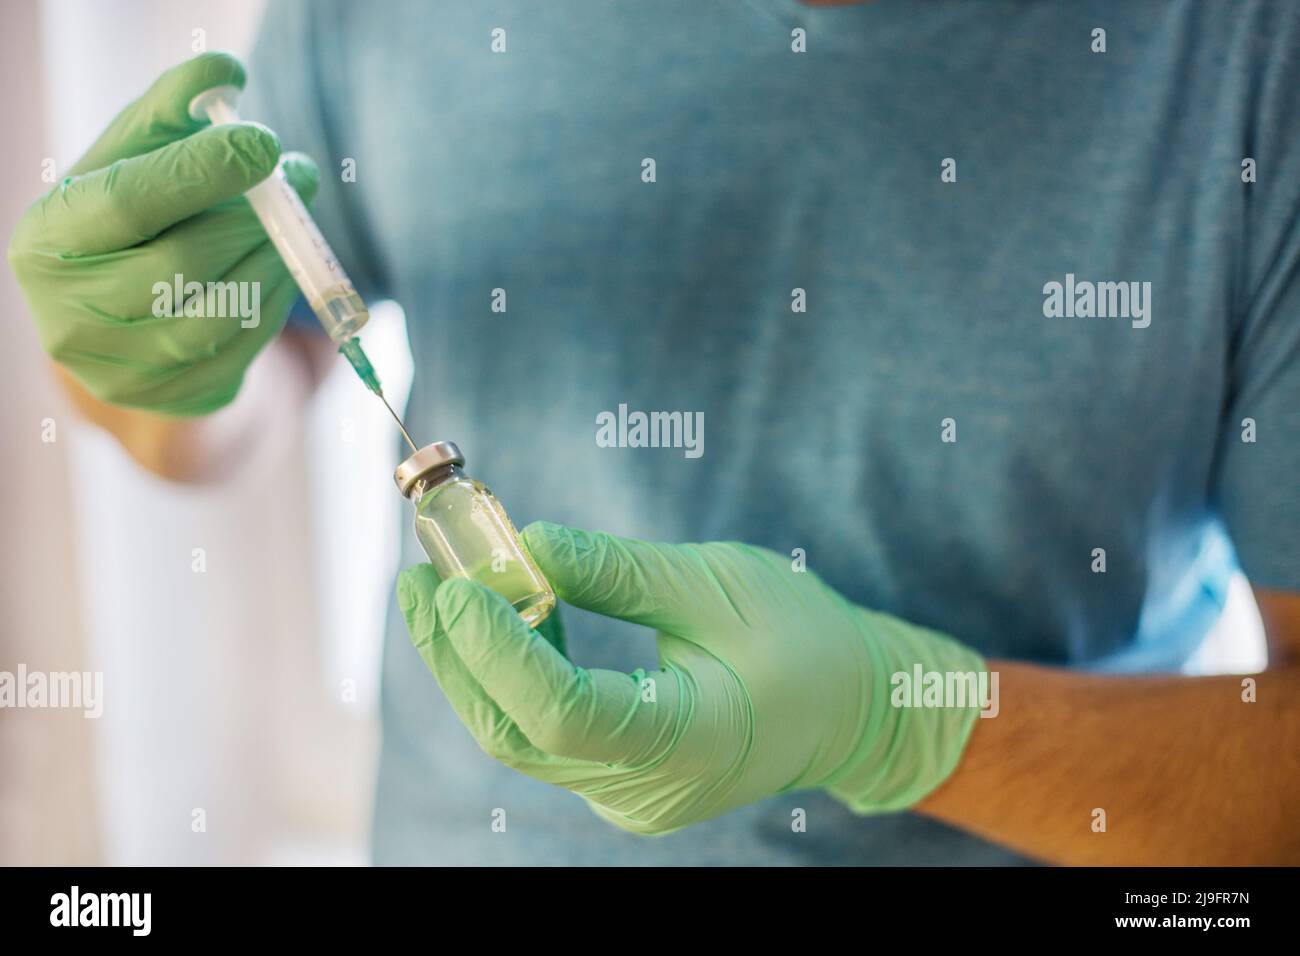 Mains du médecin remplissant une seringue. Homme mains dans des gants bleus tenant le vaccin. Médecine, vaccination et concept de drogue. Médicament flacon dose injection Banque D'Images